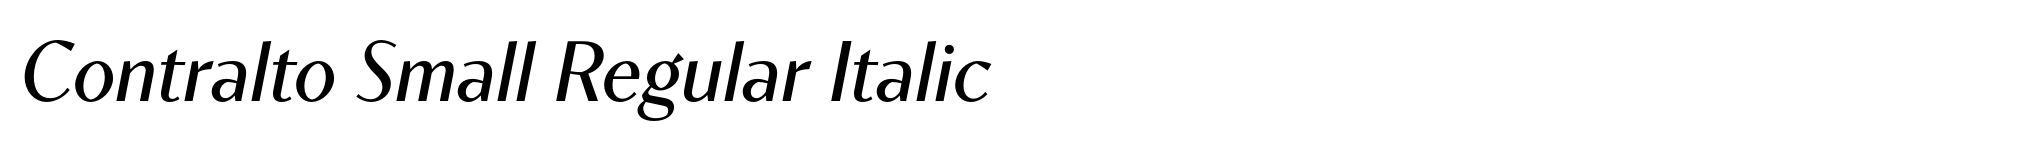 Contralto Small Regular Italic image